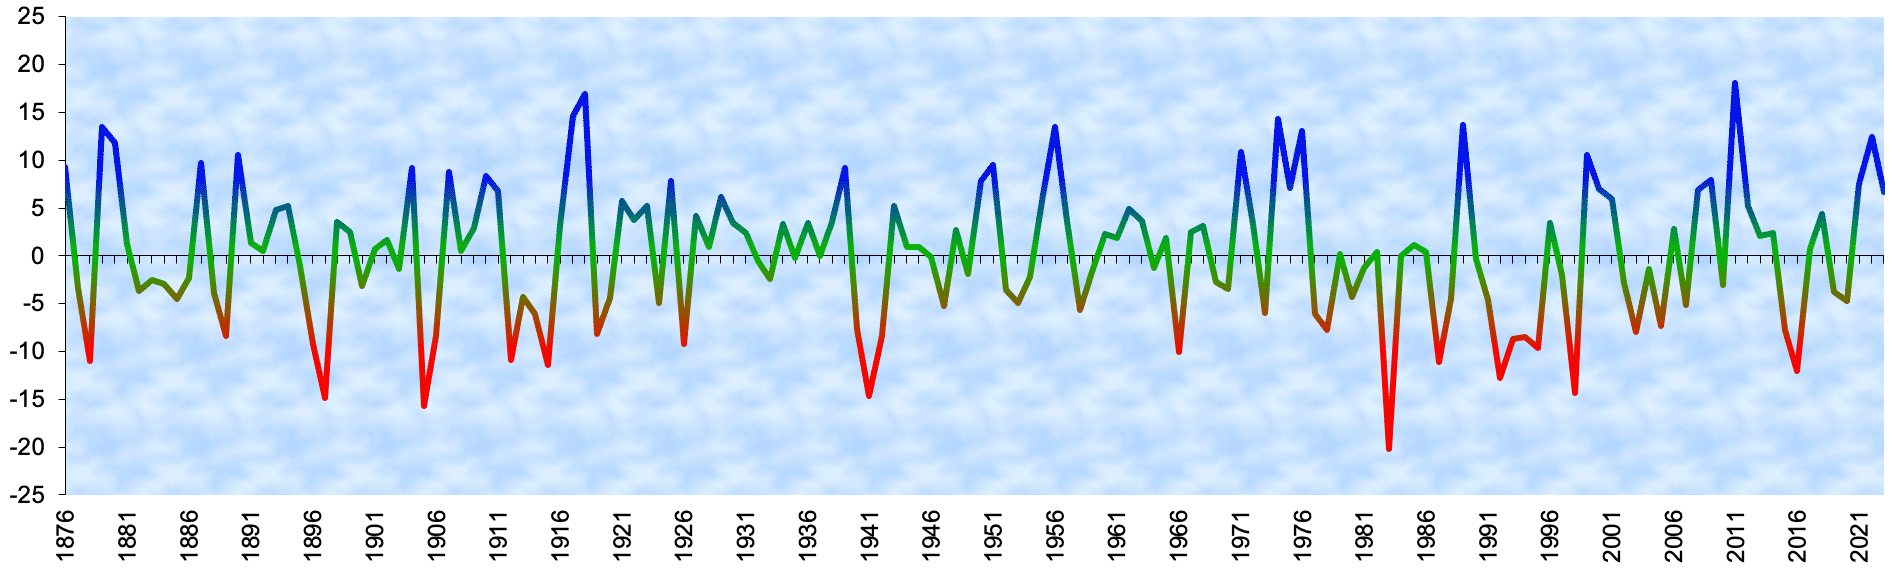 Southern Oscillation Index (SOI) von 1876 bis 2020